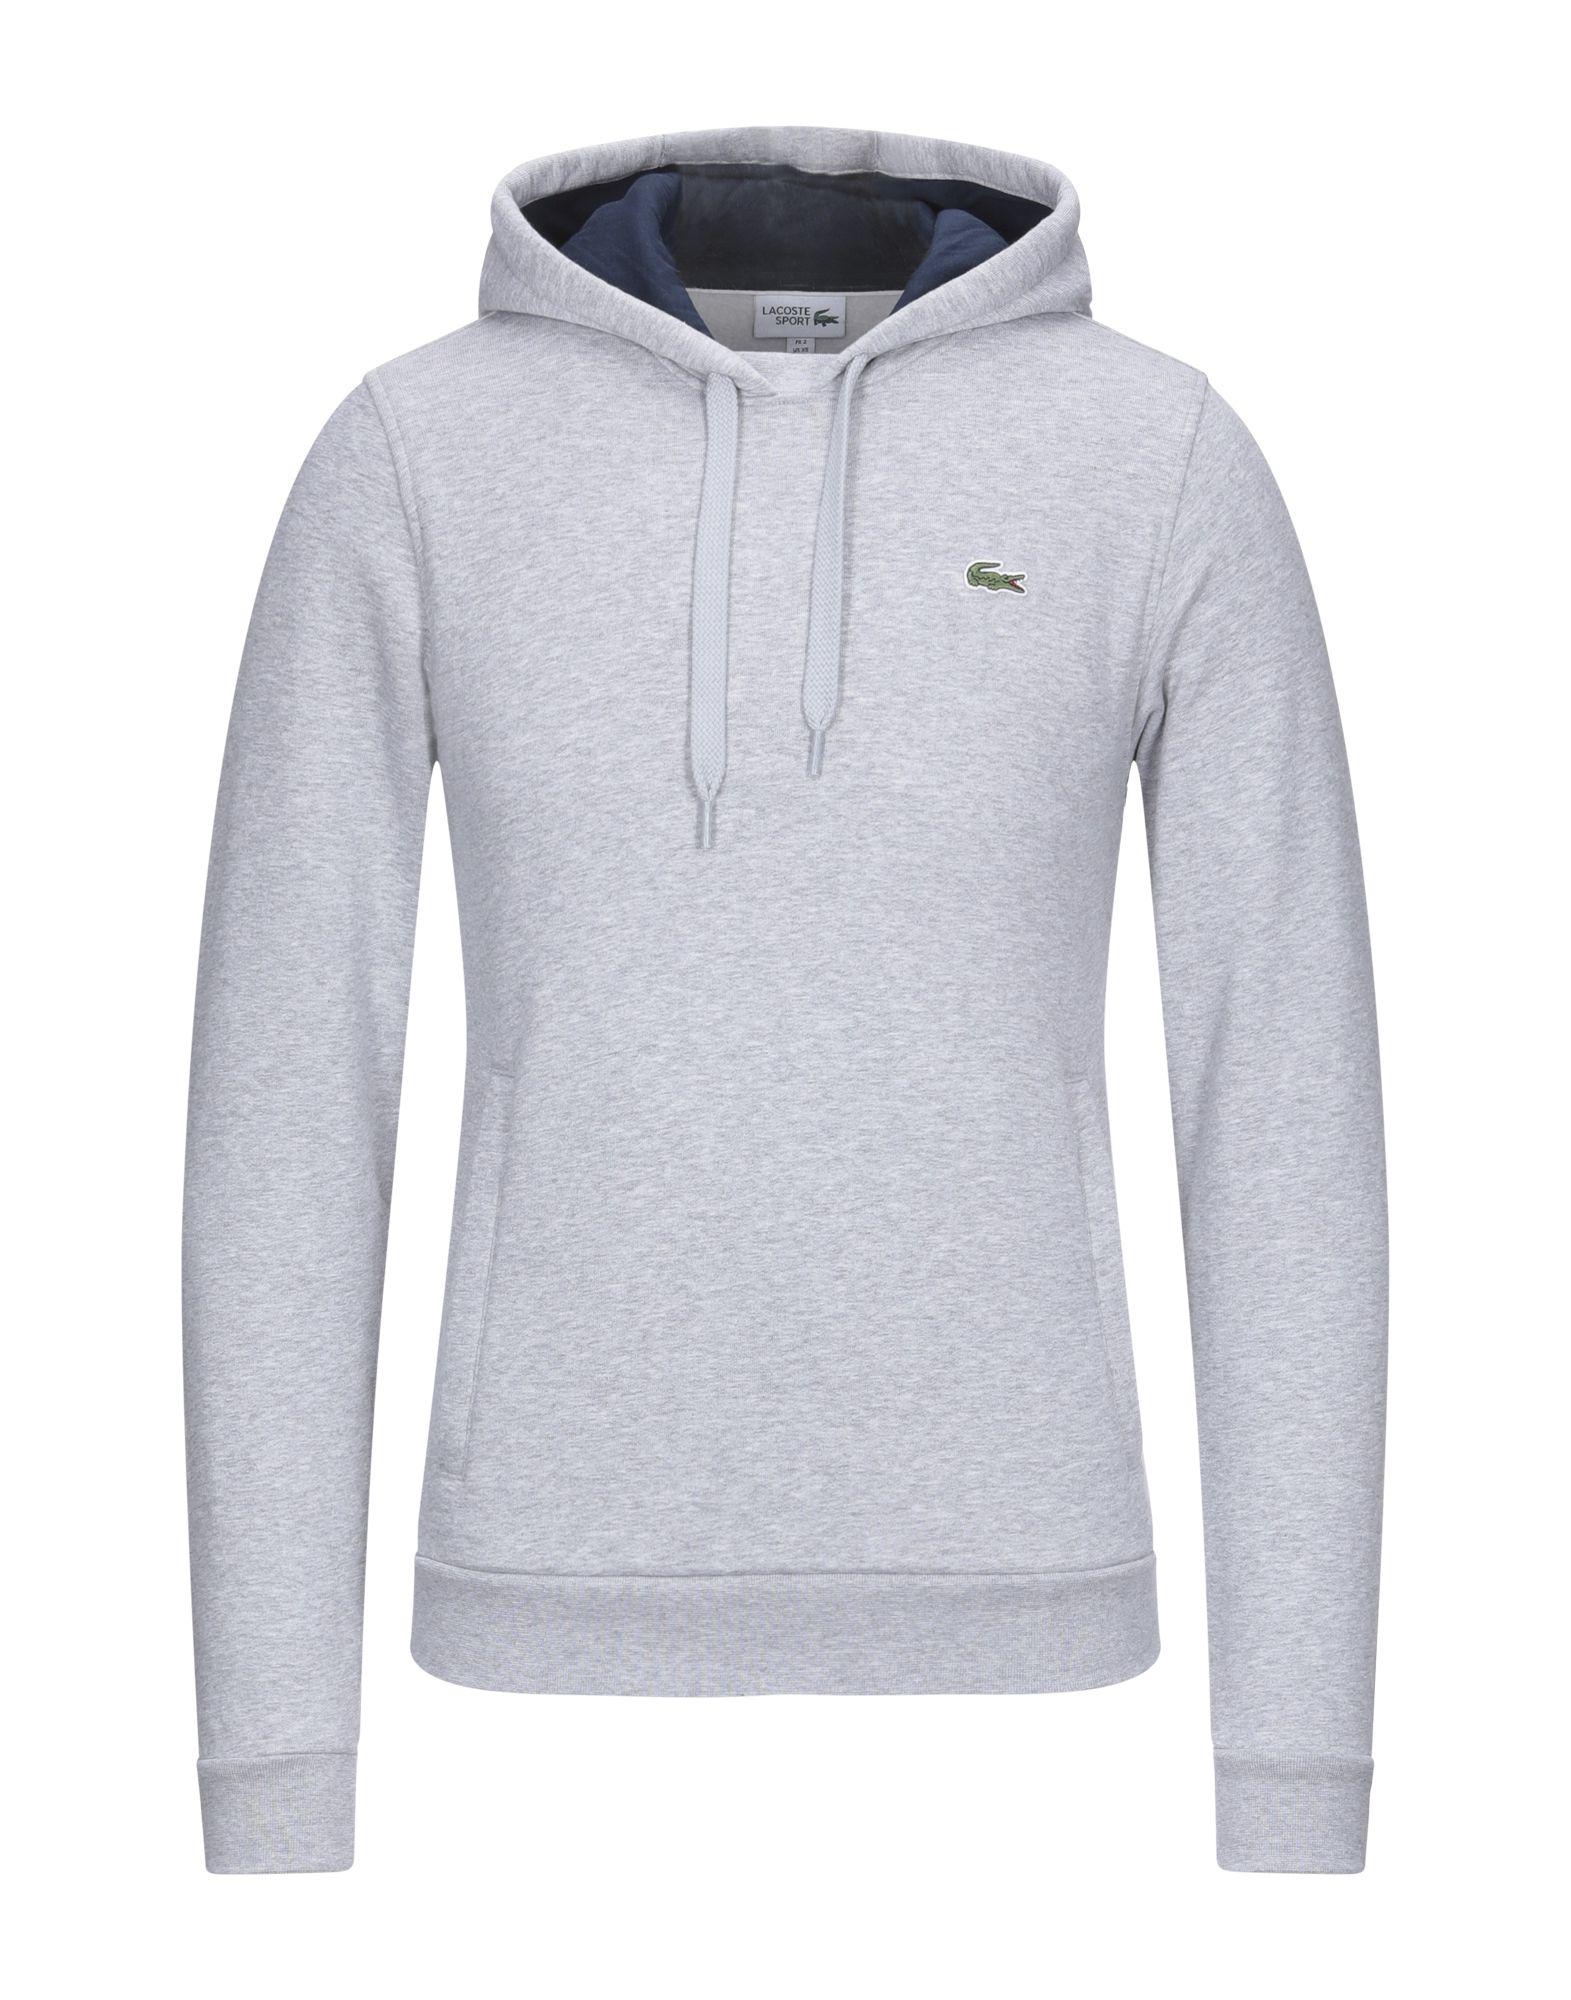 Lacoste Sport Fleece Sweatshirt in Grey (Gray) for Men - Lyst